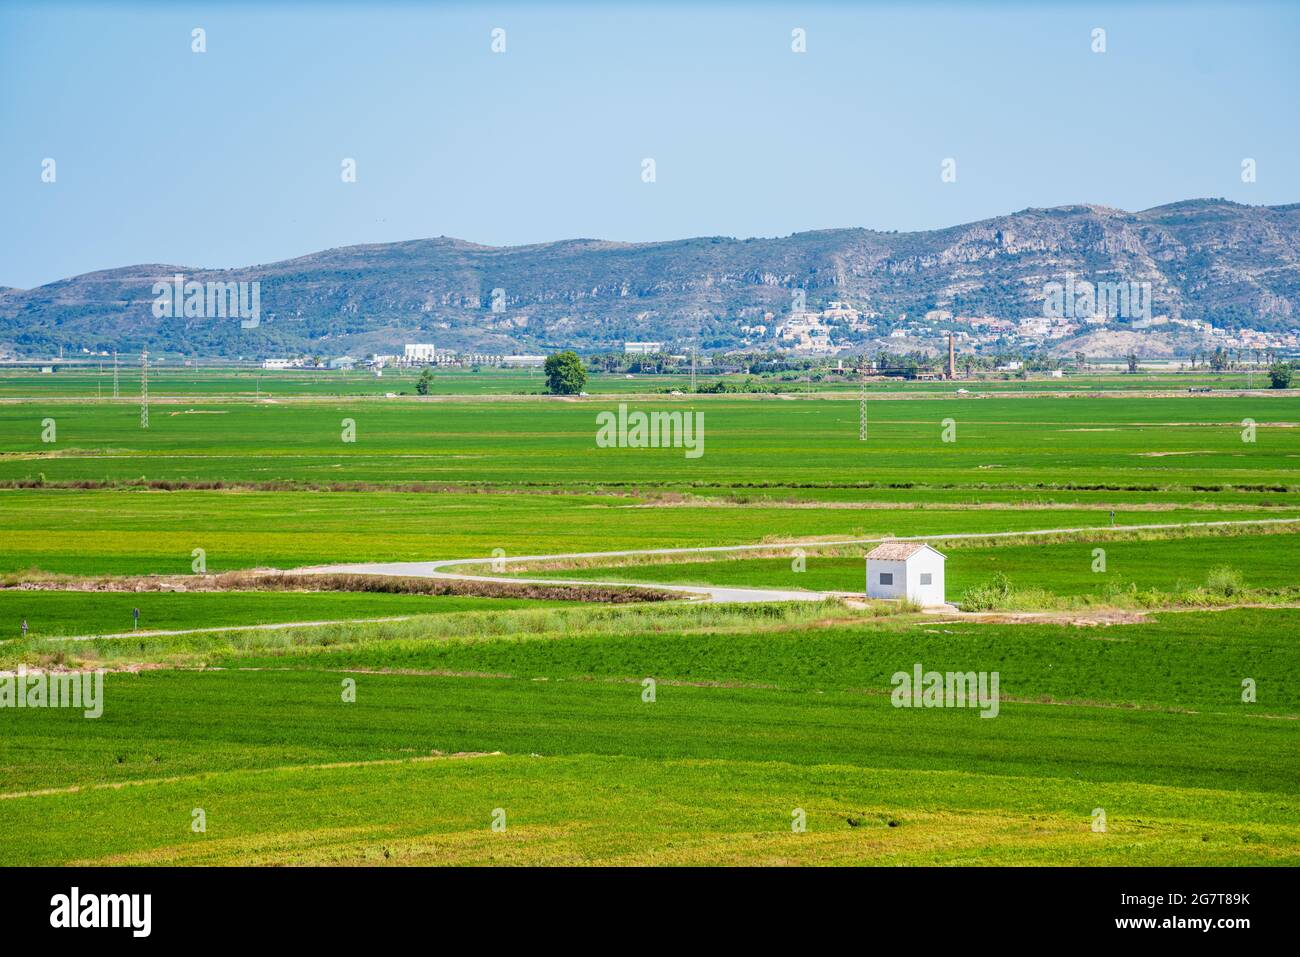 Green rice field landscape in Albufera de Valencia Stock Photo